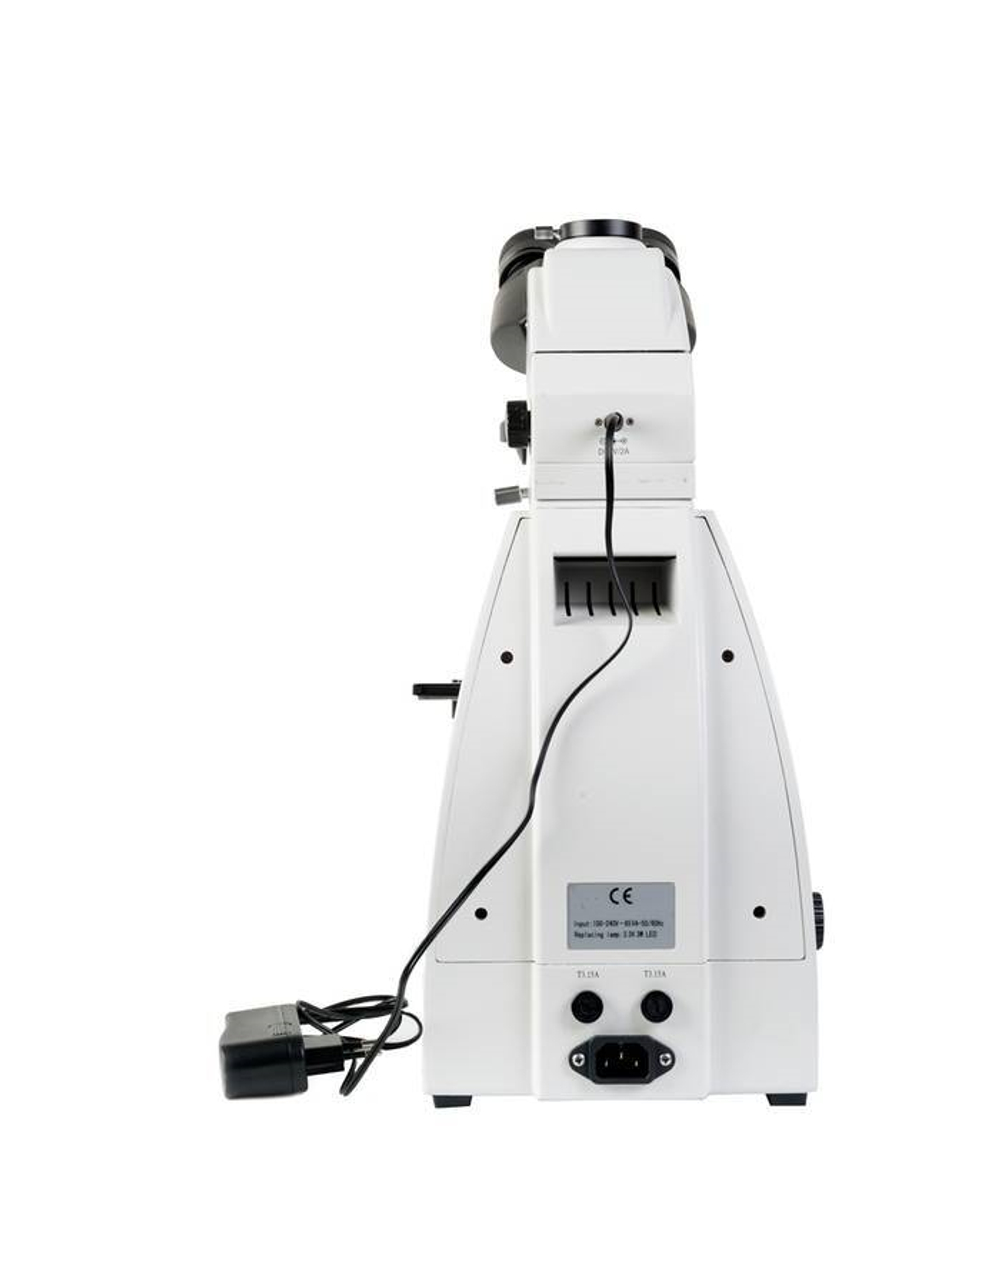 Микроскоп Микромед 3 Альфа люминесцентный